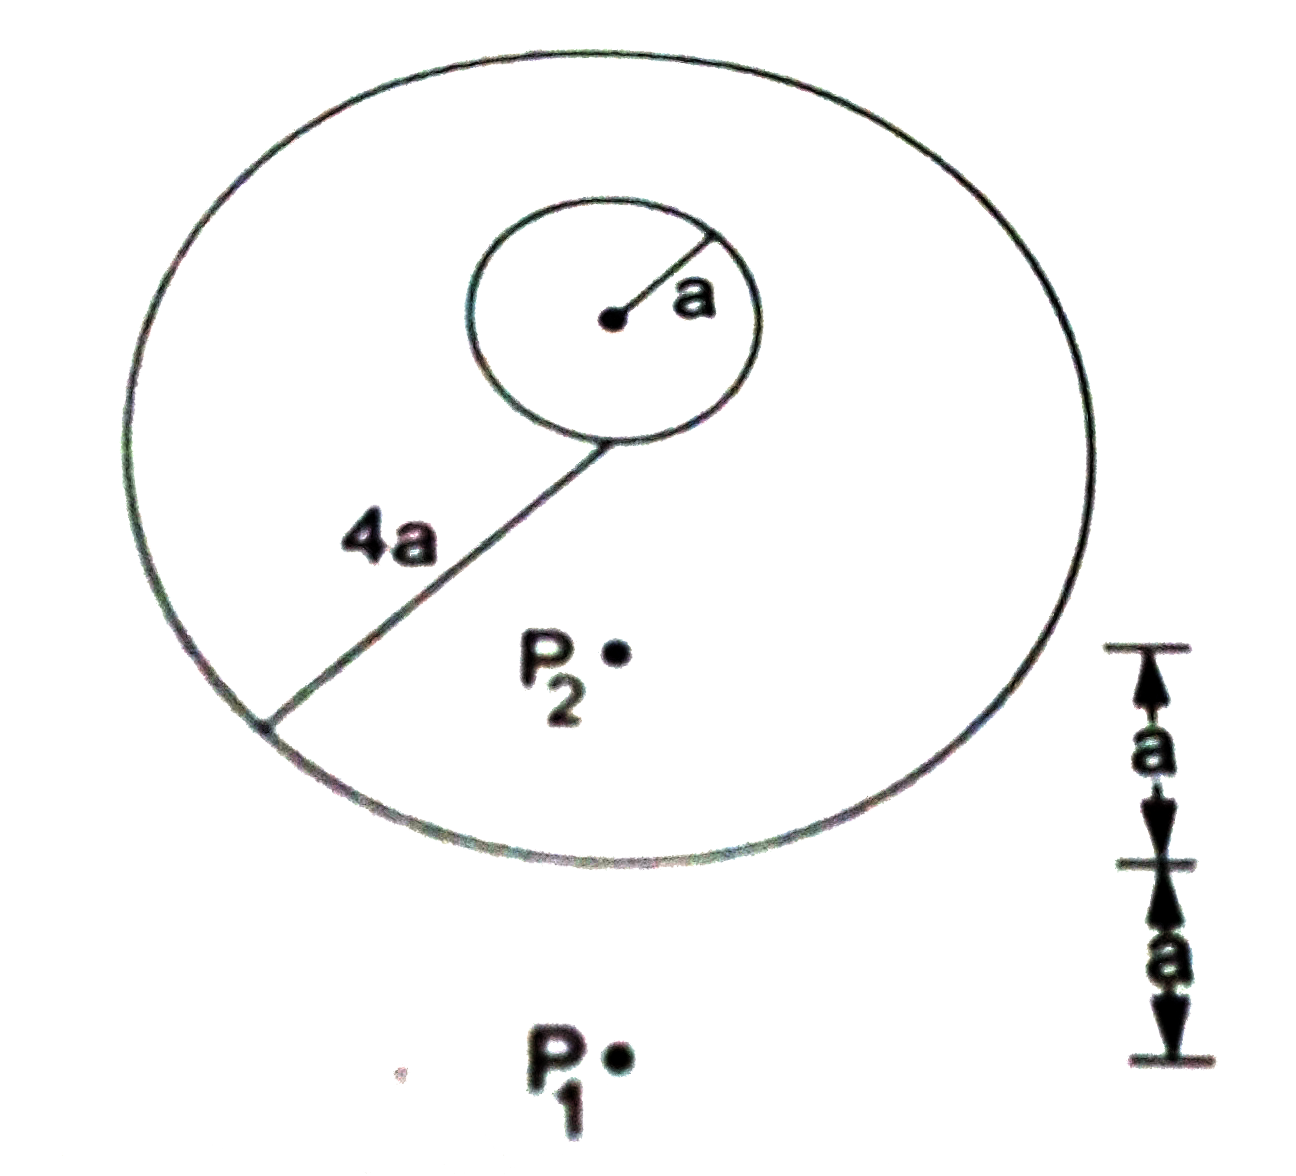 M द्रव्यमान  तथा  a त्रिज्या  का धातु  का एक  समरूप  गोला  समान  द्रव्यमान  एवं  4a  त्रिज्या  वाले  पतले  एवं  समरूप  गोलीय  कोश  के अंदर  रखा है।   कोश  का केंद्र  अंदर वाले  गोले  की सतह  पर स्थित  है। चित्र  में प्रदर्शित बिंदुओ  p(1)  तथा p(2)  को मिलानेवाले  रेखा गोले  तथा  कोश  के केद्रो  से गुजरती है।  तथा  कोश  के सबसे  निचले  बिंदु  से इनकी  दूरियाँ  a के बराबर  है। इन बिंदुओ  पर गुरूत्वीय  क्षेत्र ज्ञात  करें।